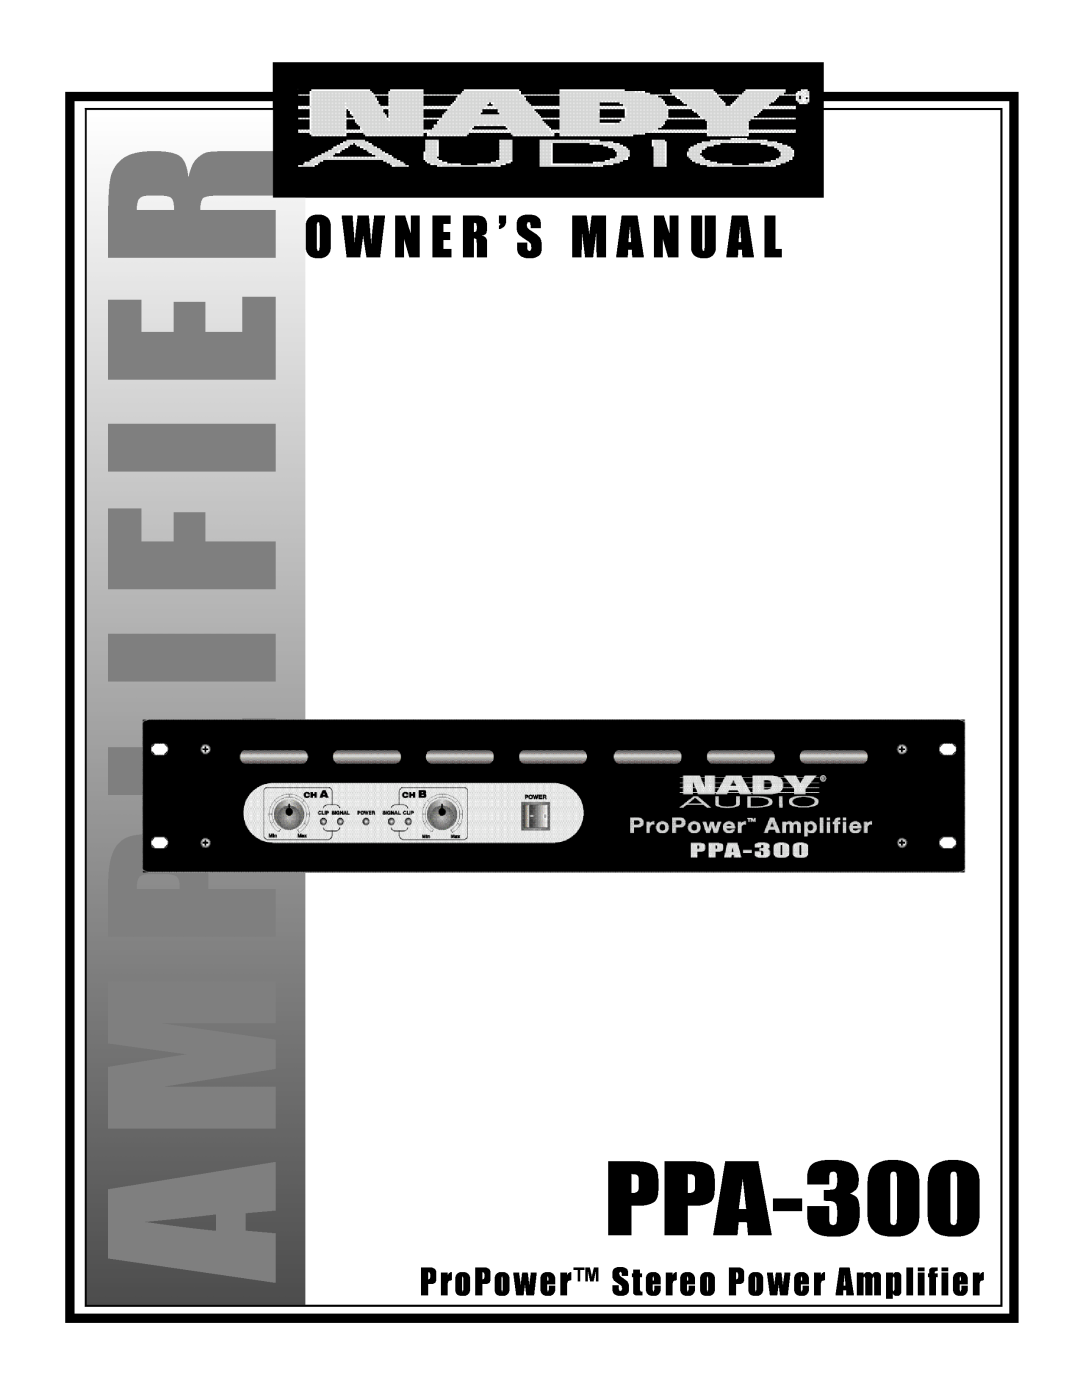 Nady Systems PPA-300 owner manual A M Pl I F I E R, O W N E R ’ S M A N U A L, ProPower Stereo Power Amplifier 